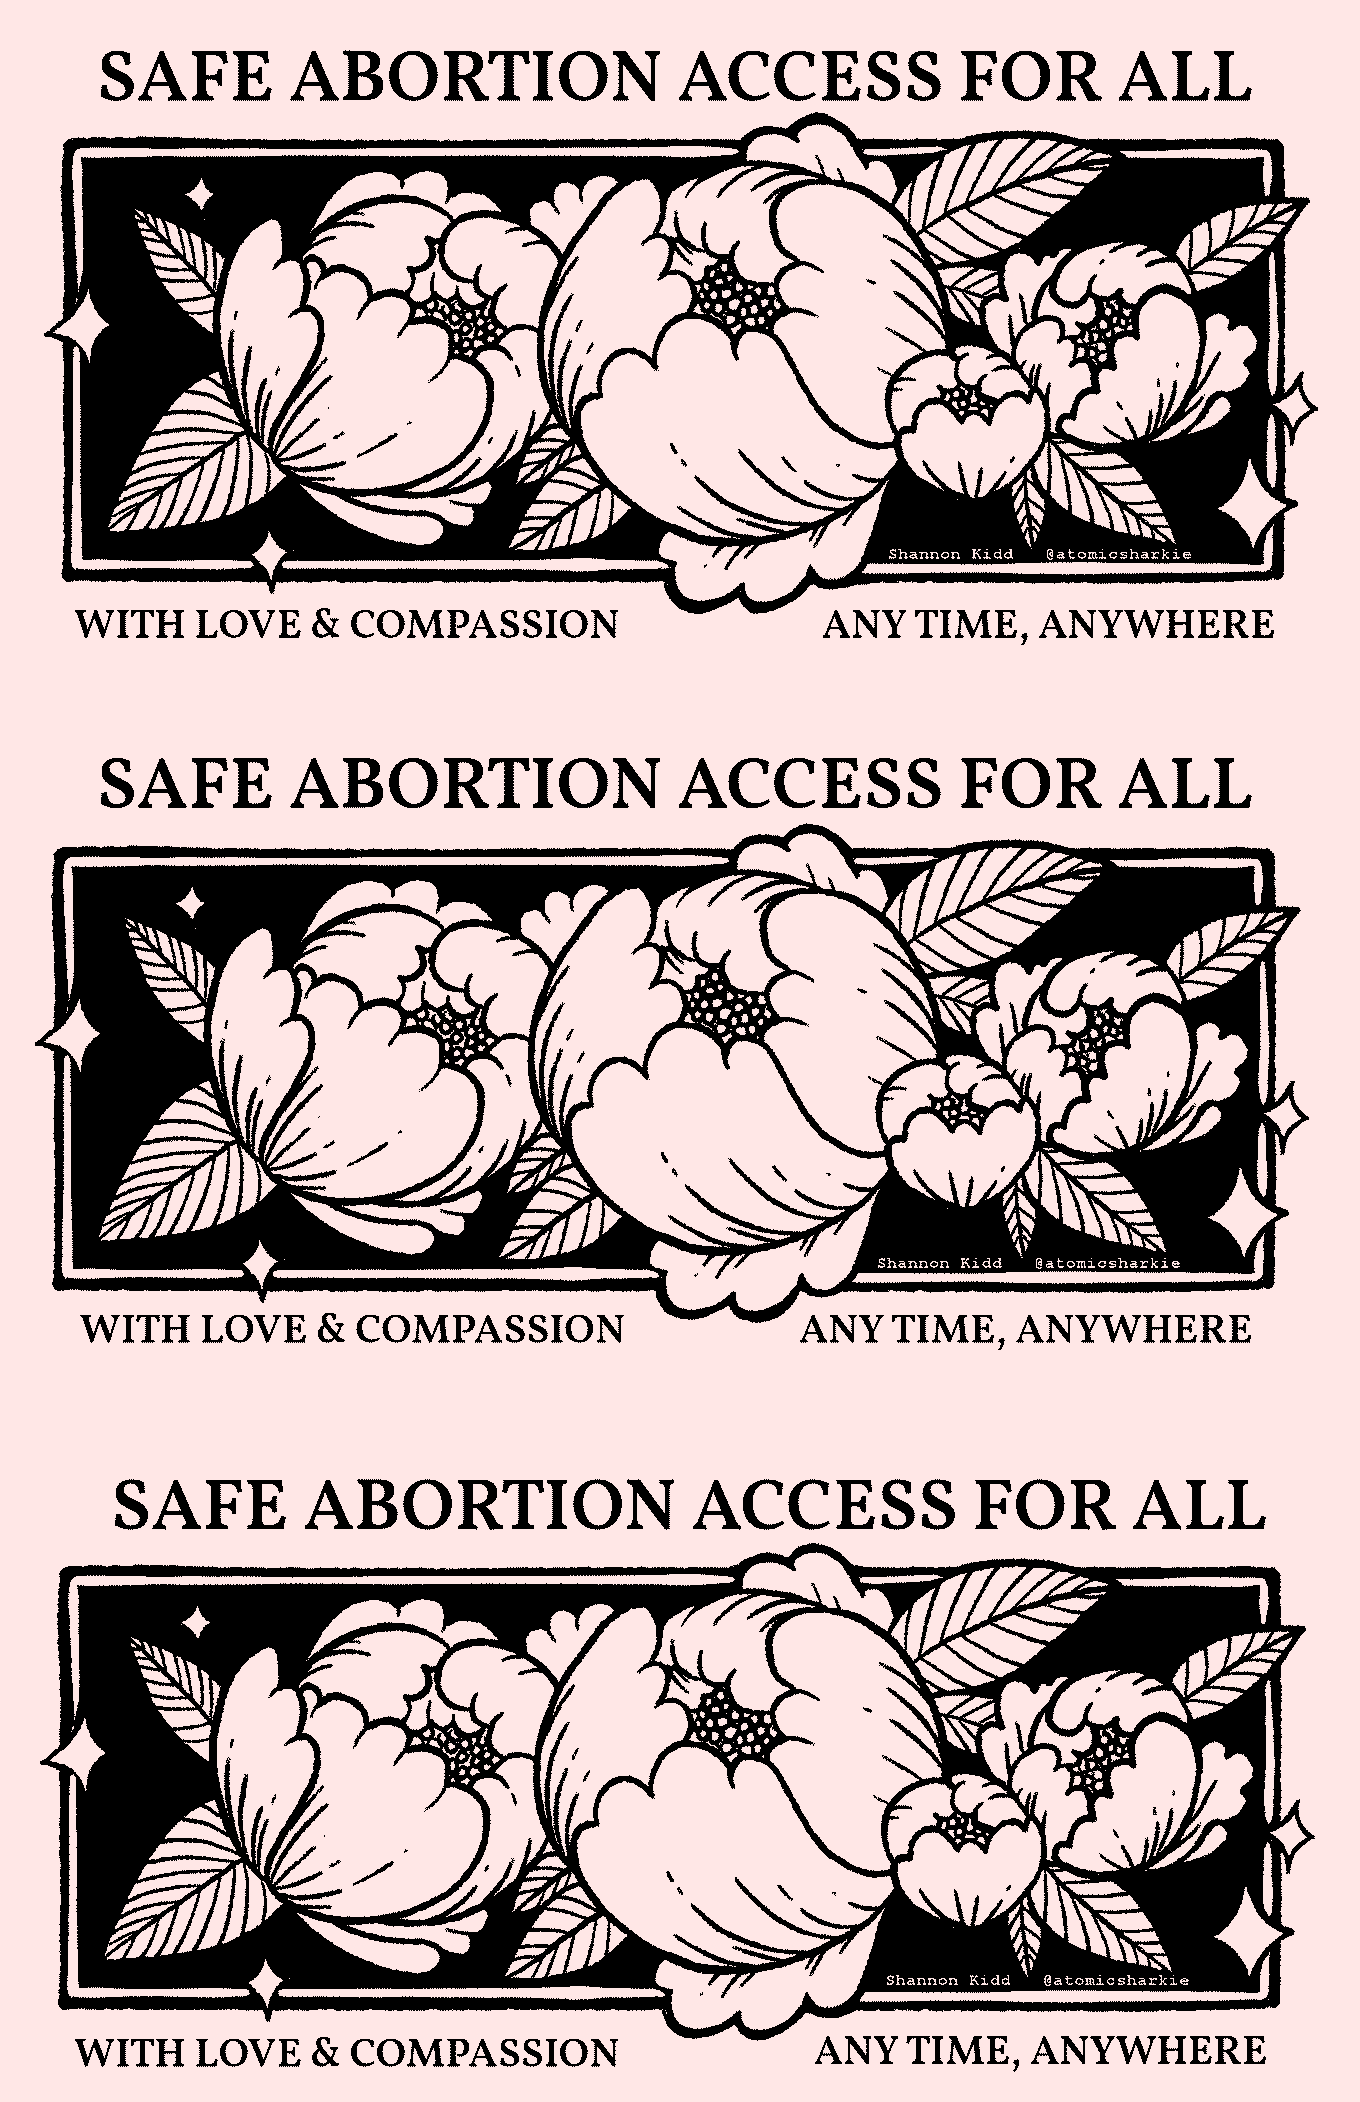 Veilige toegang tot abortus voor iedereen